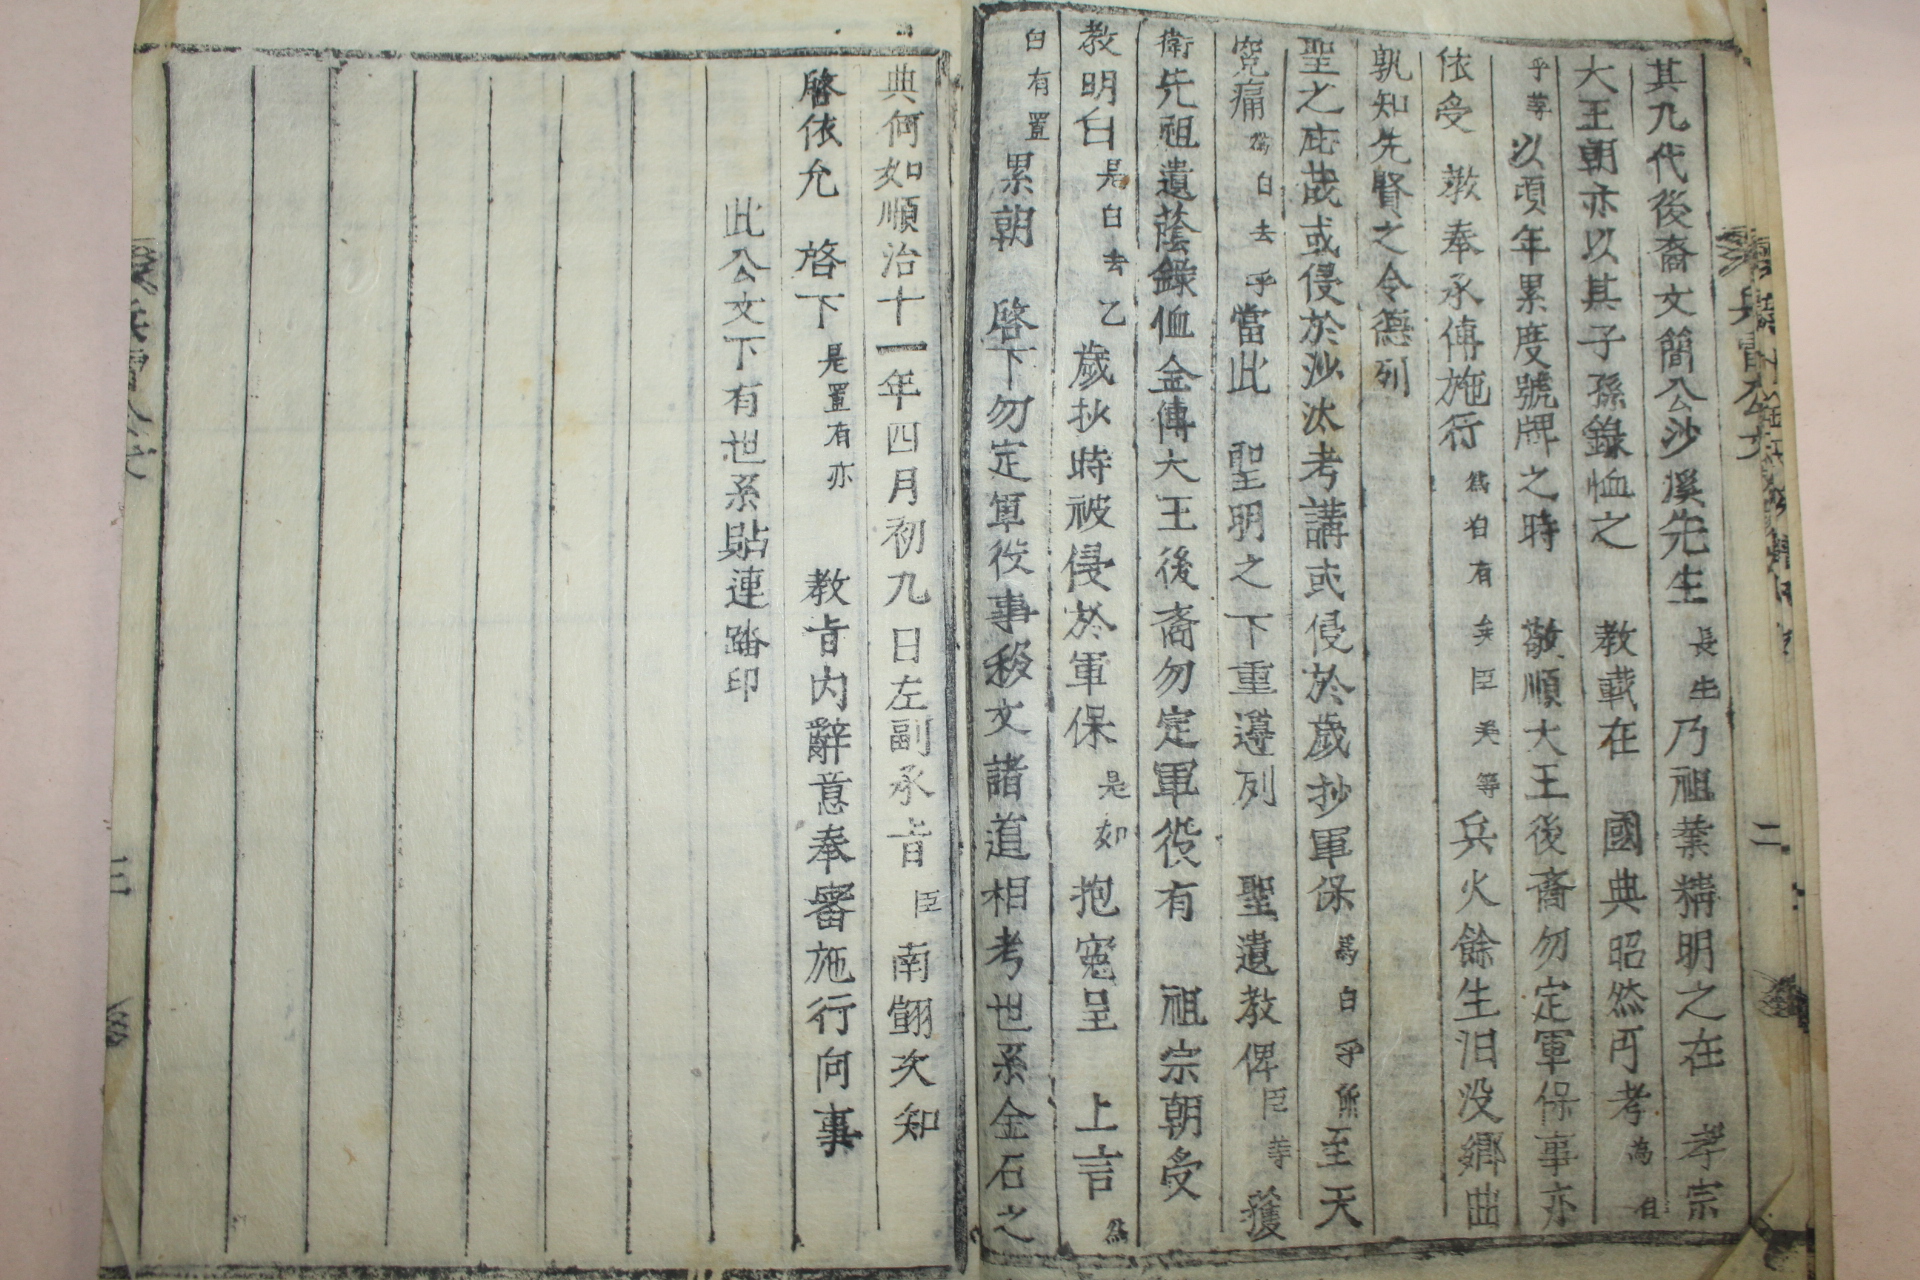 목활자본 경주김씨족보(慶州金氏族譜) 9책완질